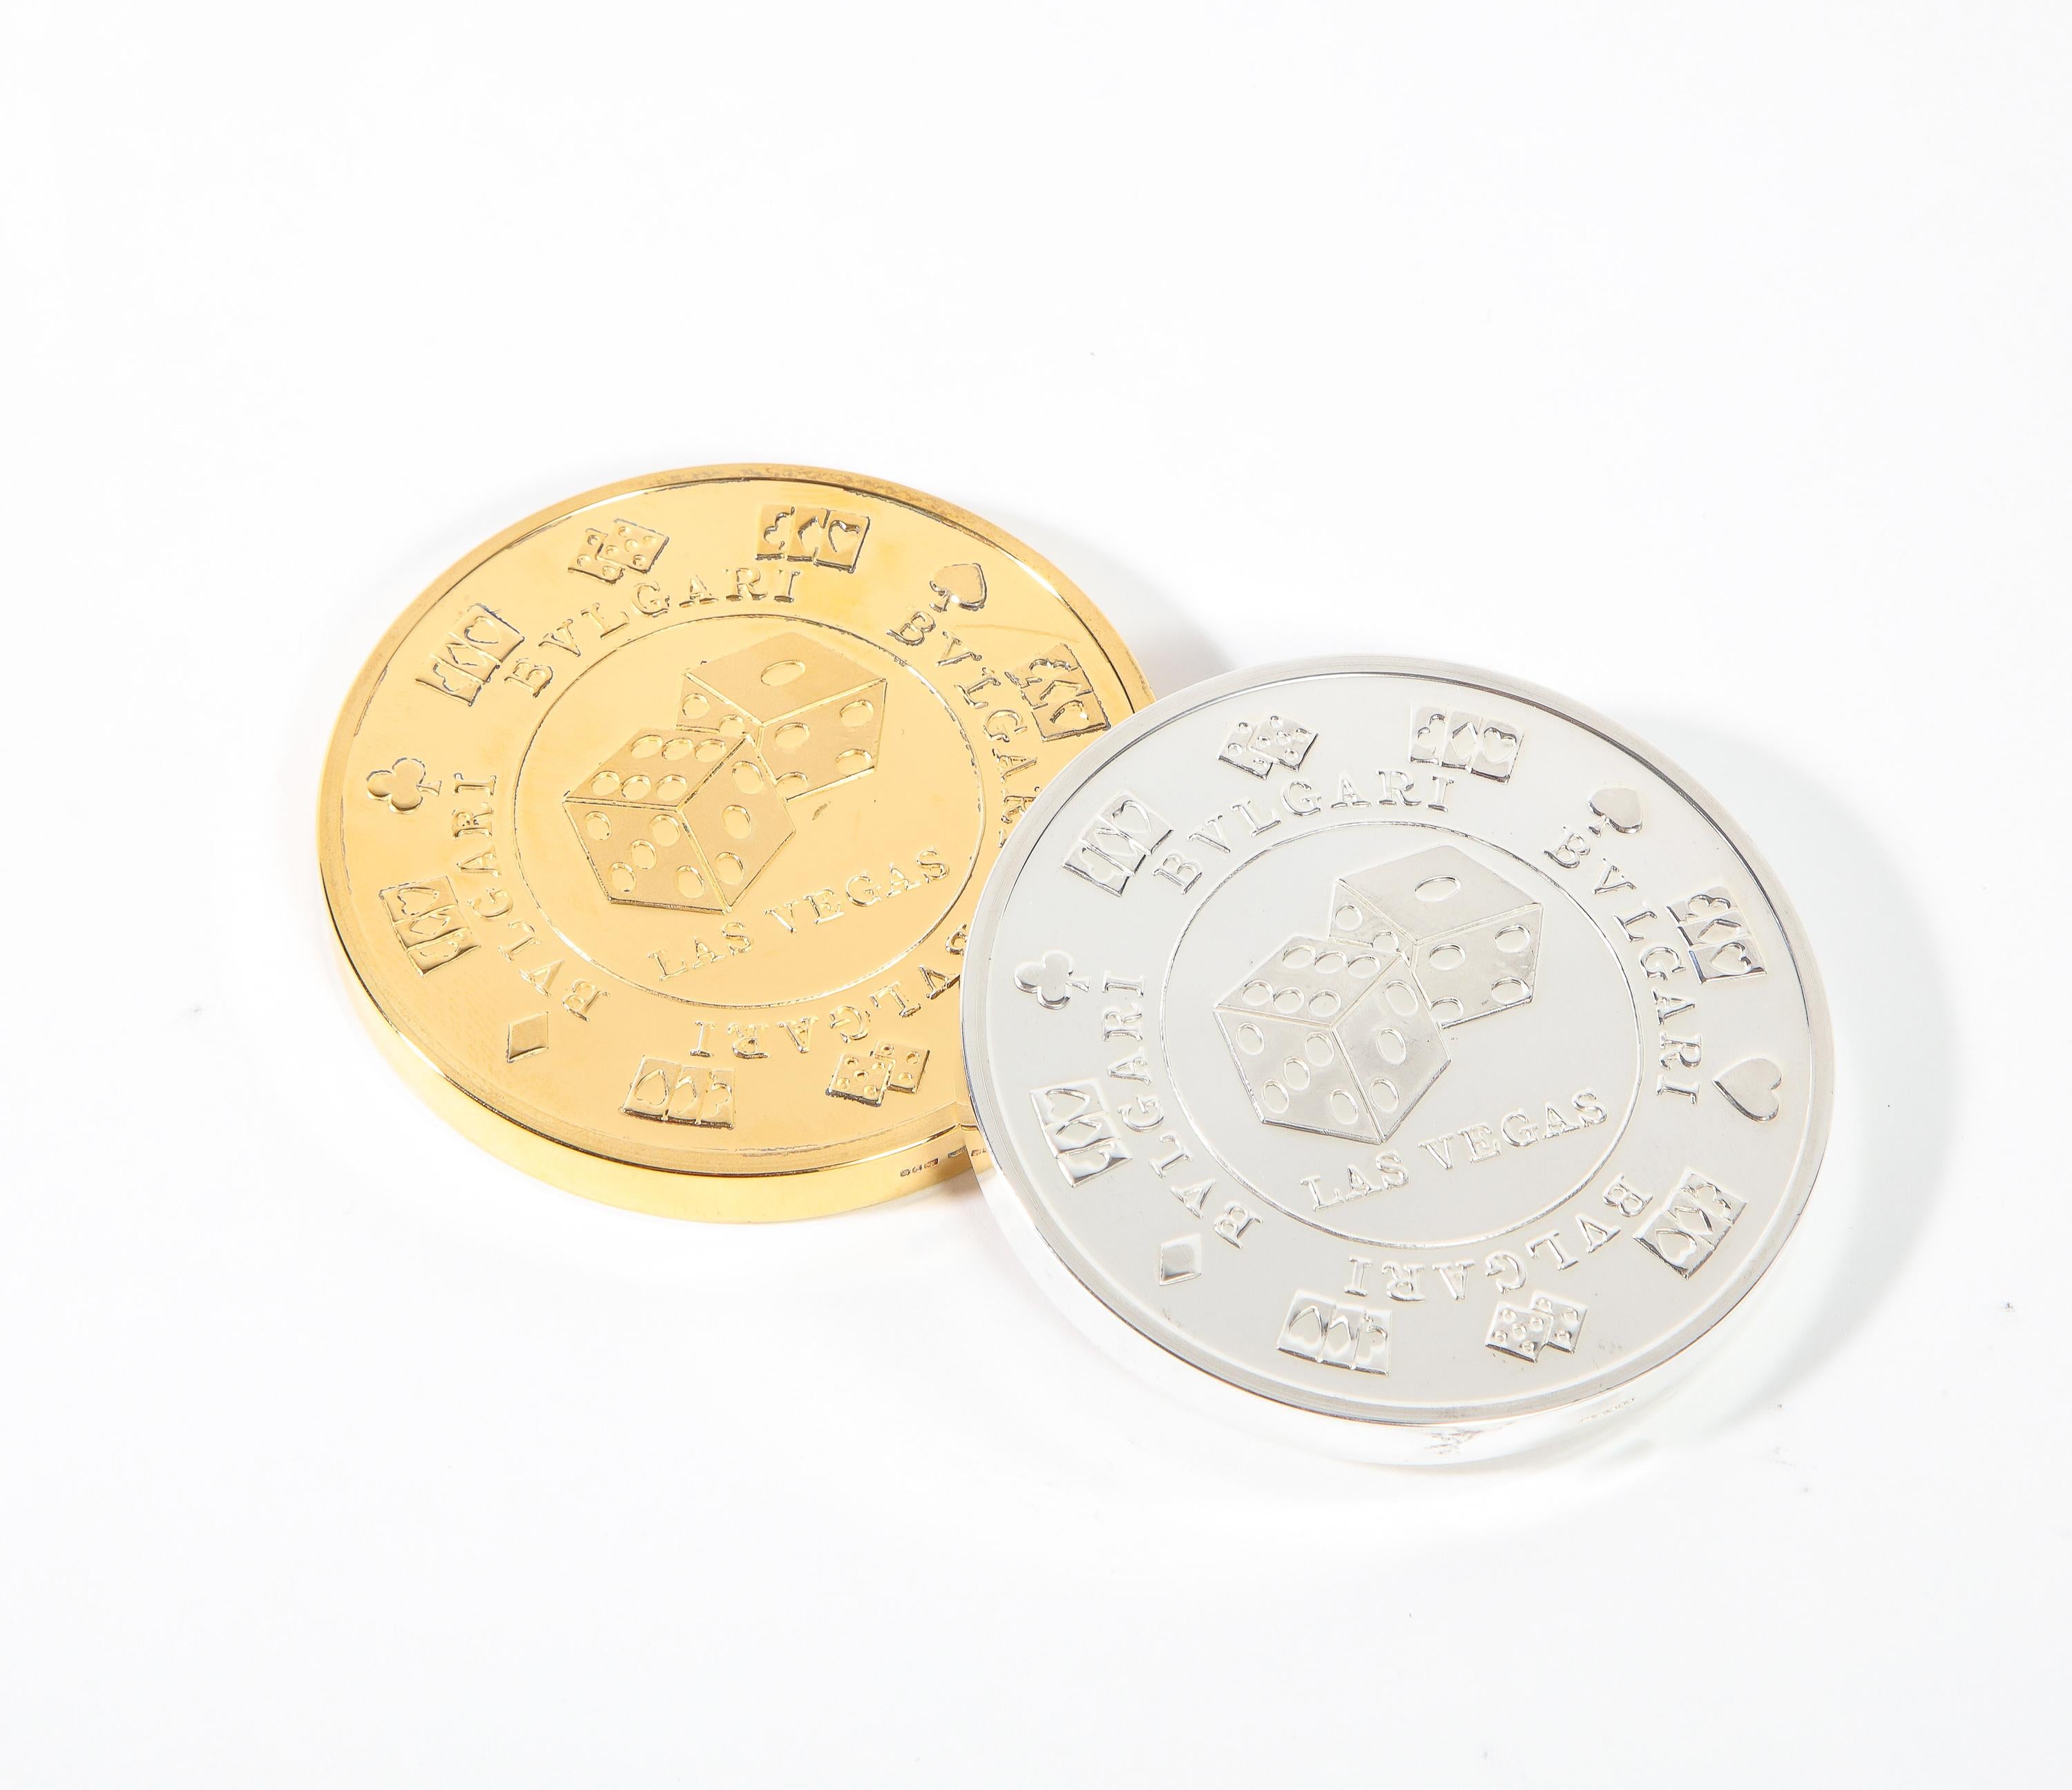 Bvlgari Bulgari Sterling Silver Oversized Casino Paperweight Coin 